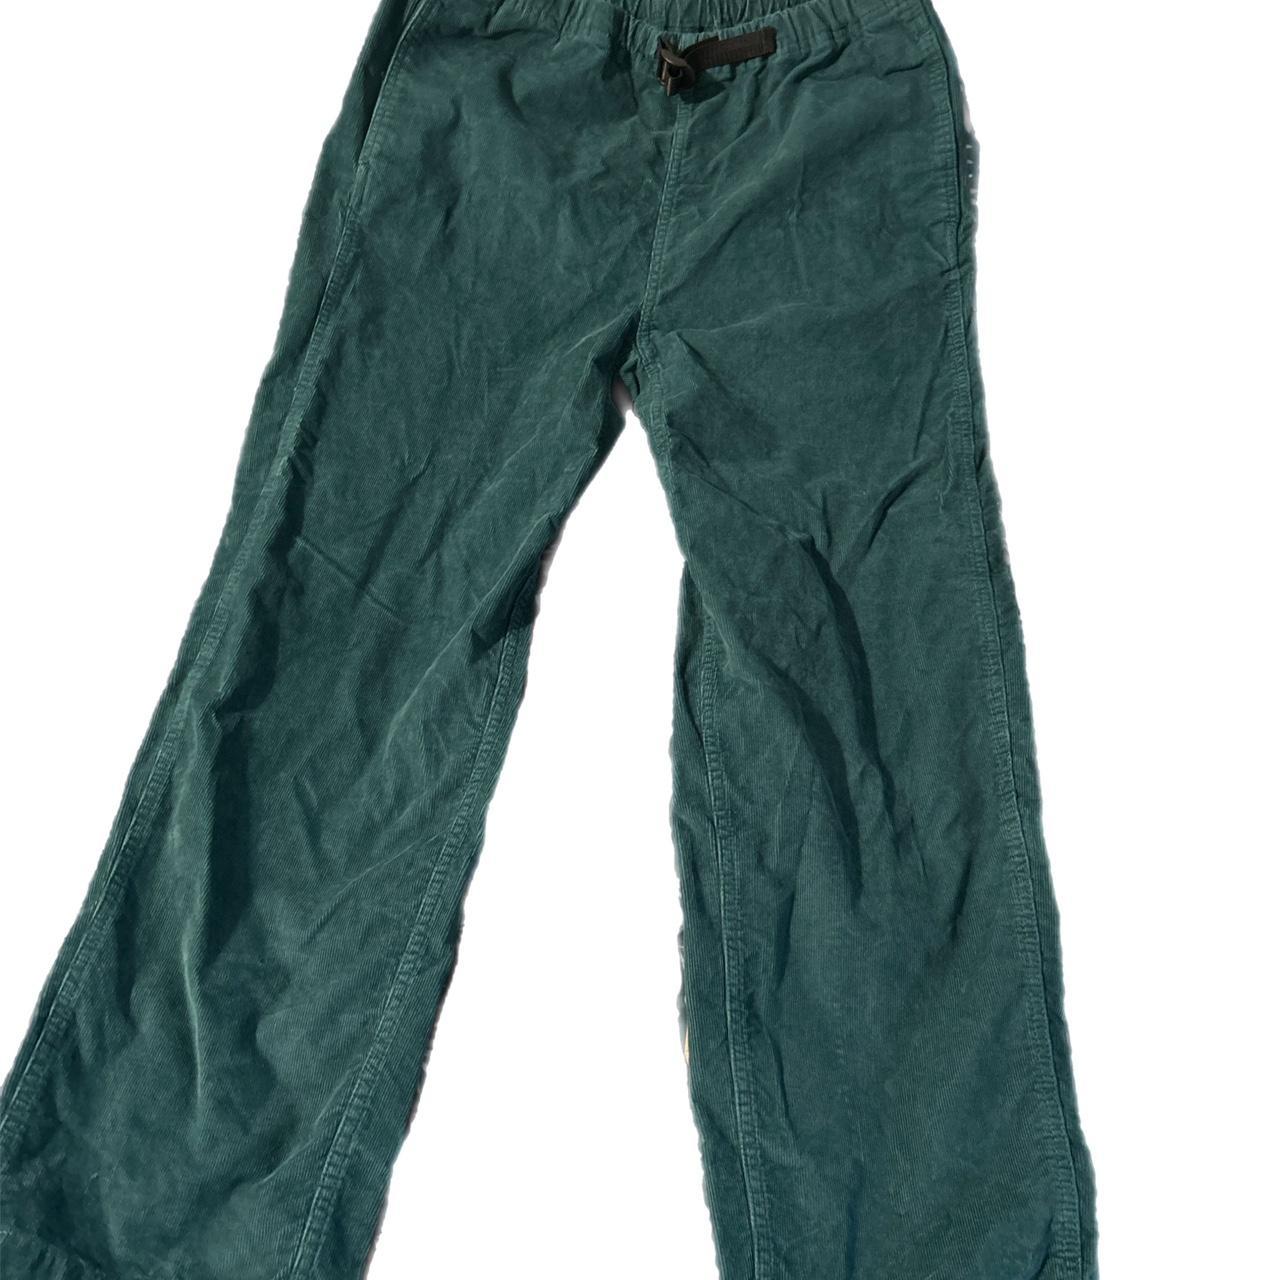 Blue Levi’s Corduroy Trousers Perfect Condition,... - Depop